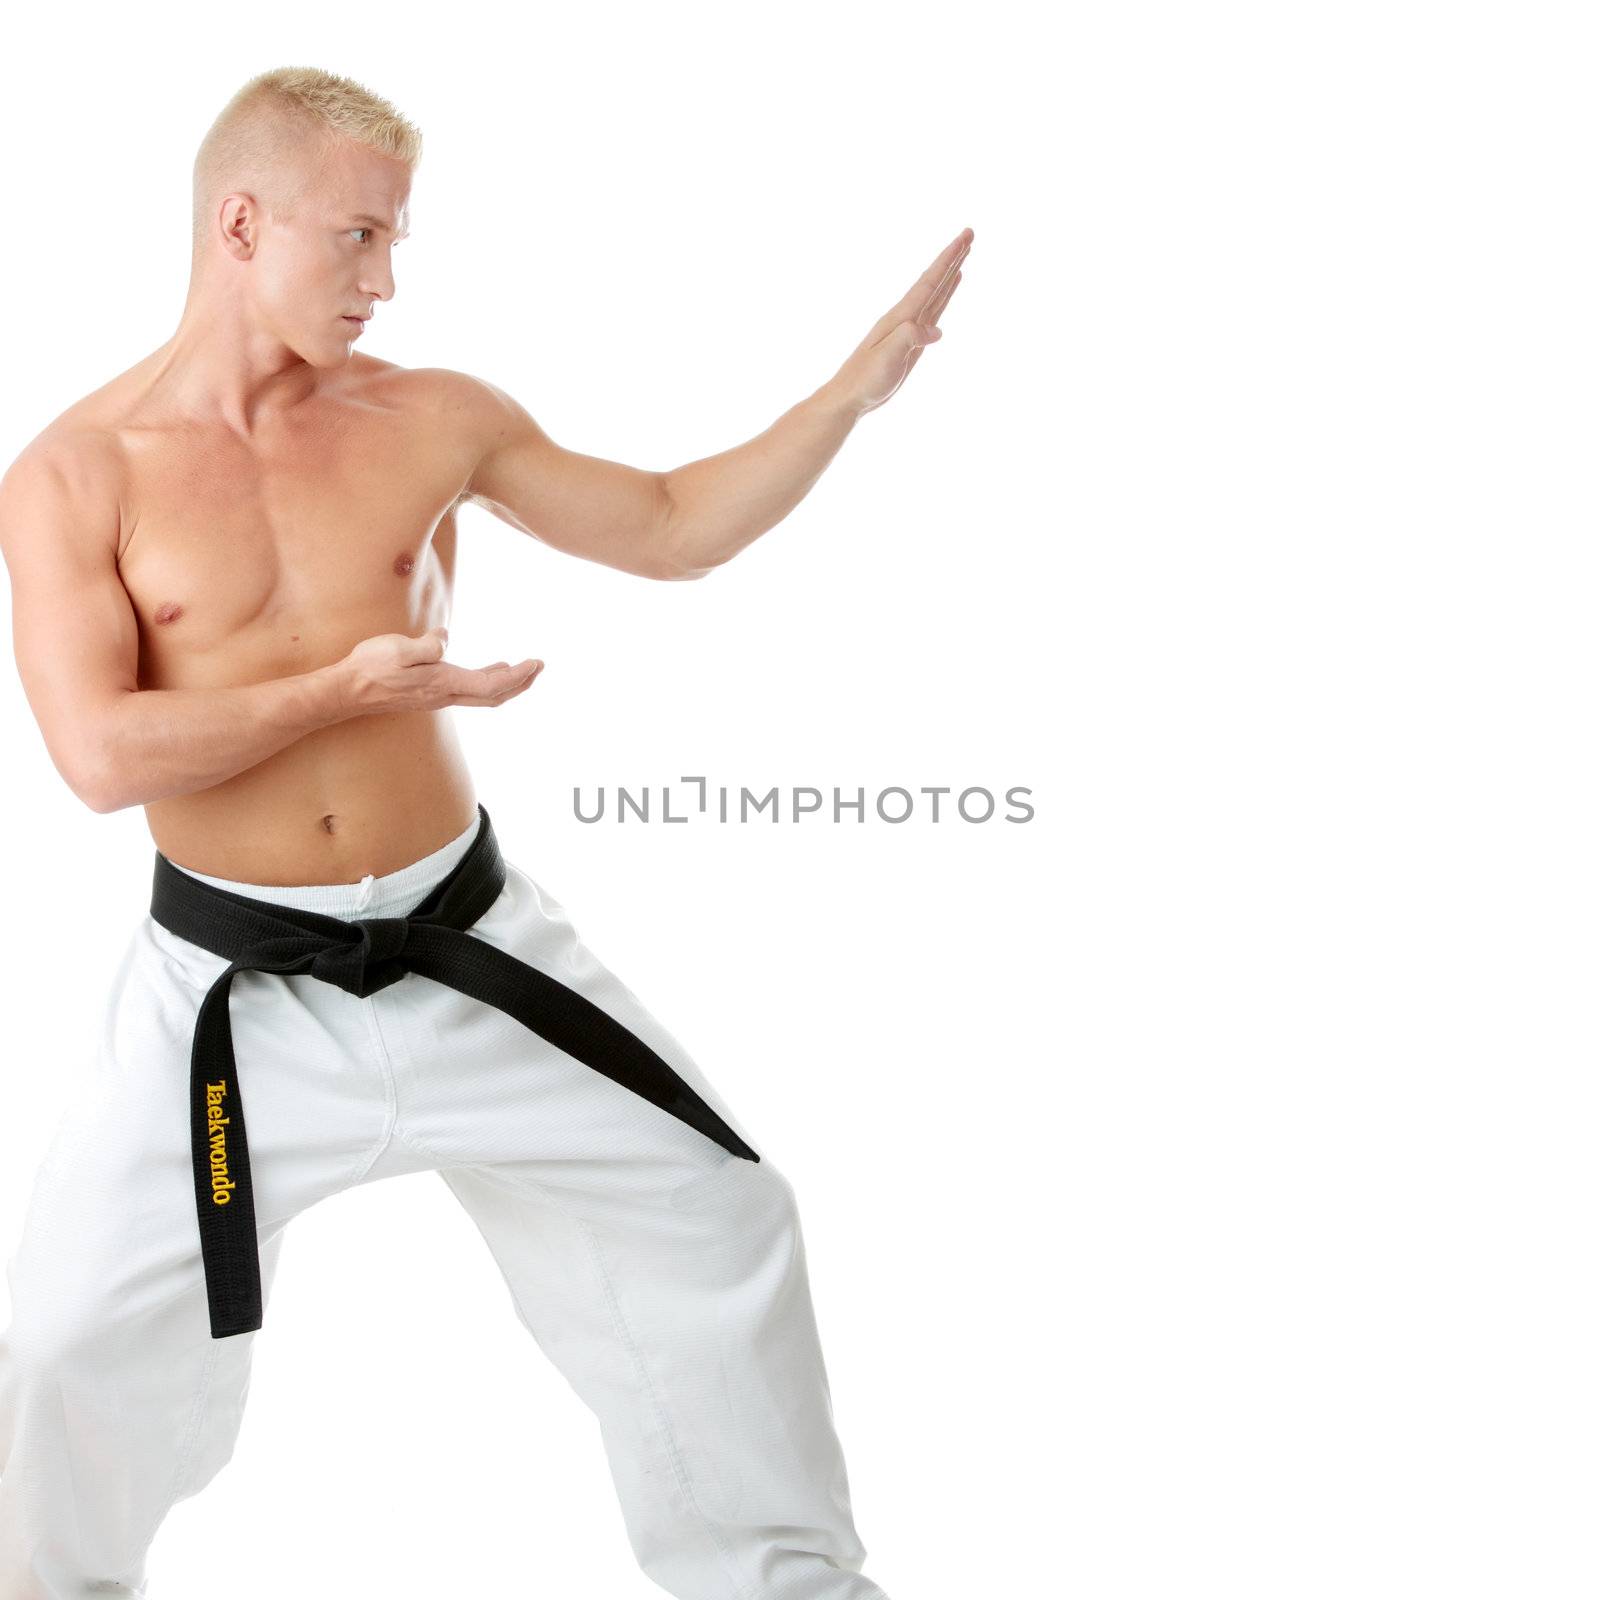 Taekwondo fighter isolated on white background